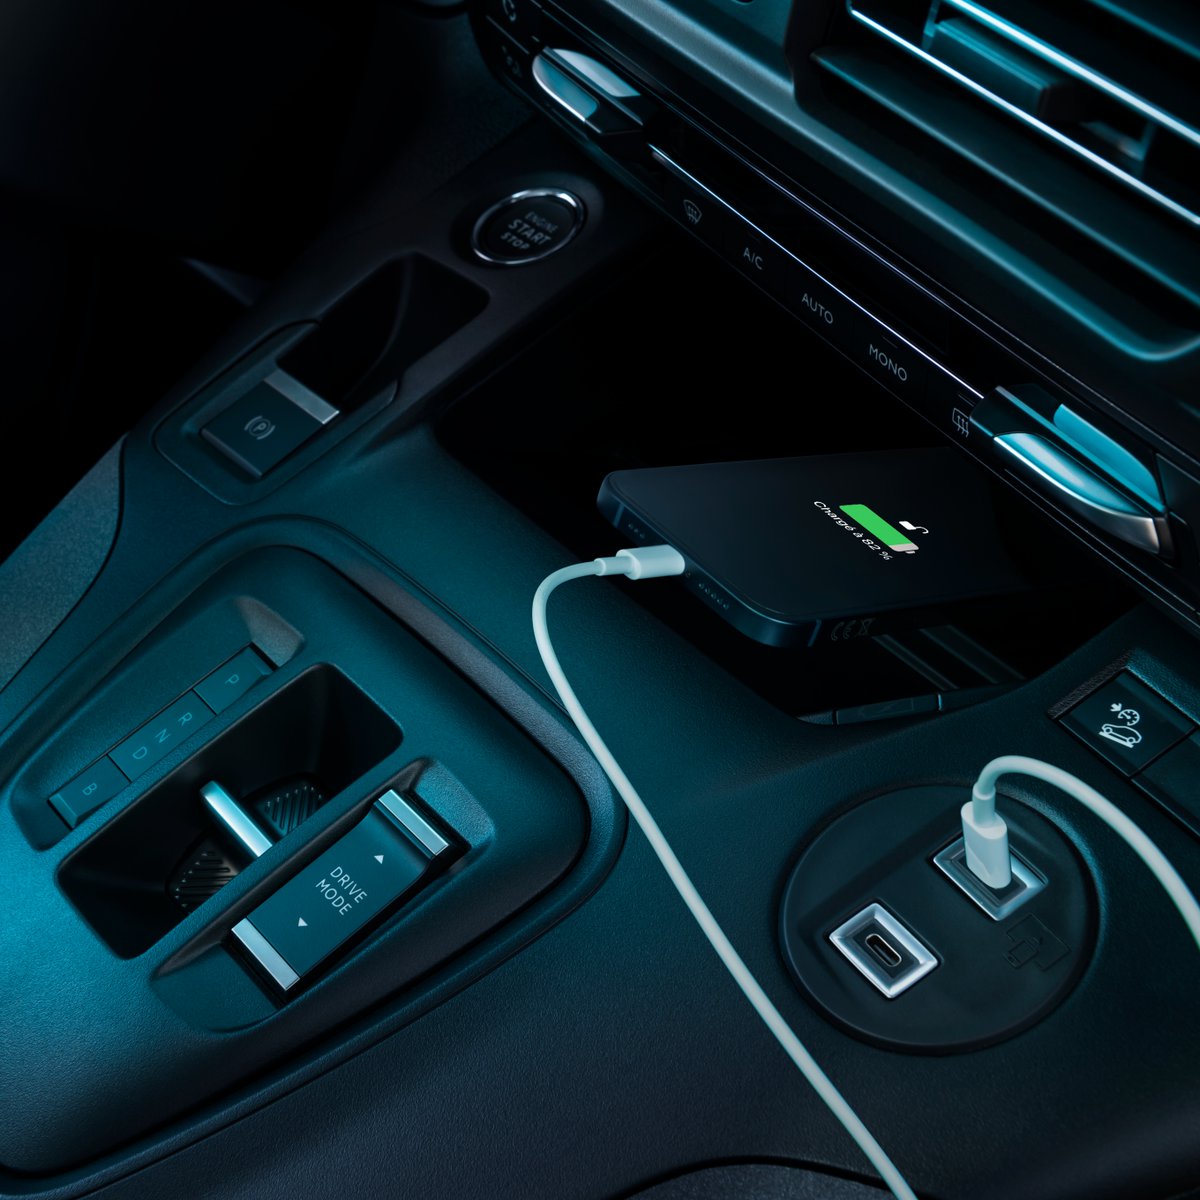 Der neue Peugeot Rifter #AllElectric – wenn Vielseitigkeit keine Grenzen kennt.

Kombinierte Werte für den E-Rifter gem. WLTP: Energieverbrauch 18,8- 19,2 kWh/100 km; CO2-Emission 0 g/km; CO2-Klasse: A